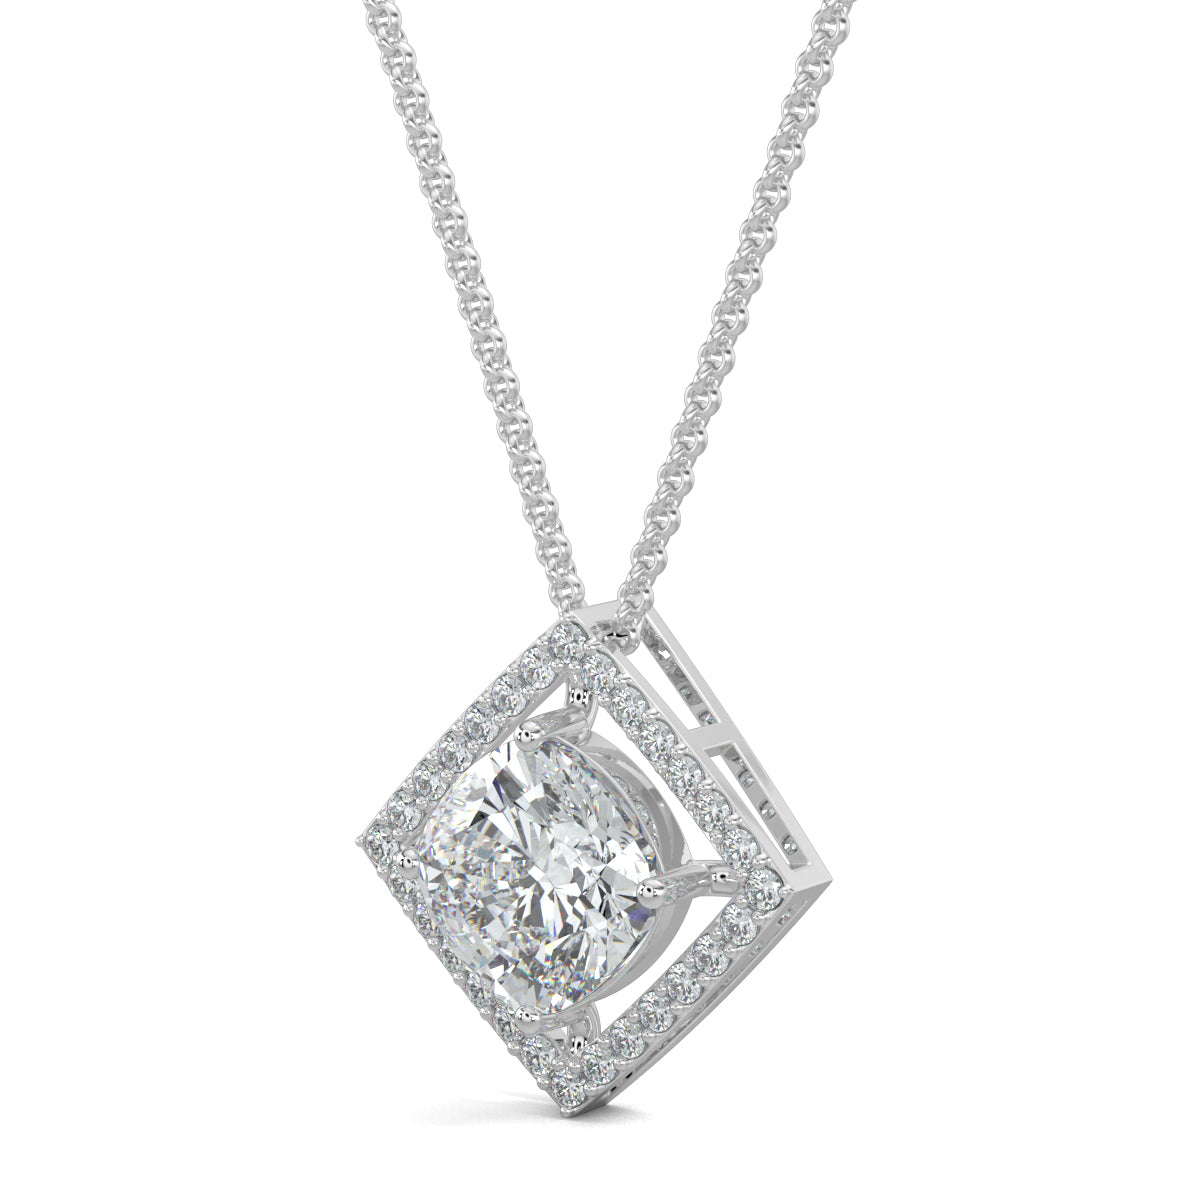 White Gold, Diamond Pendant, Natural Diamonds, Lab-grown Diamonds, Halo edge square pendant, diamond pendant, square pendant, round diamond border, halo setting pendant